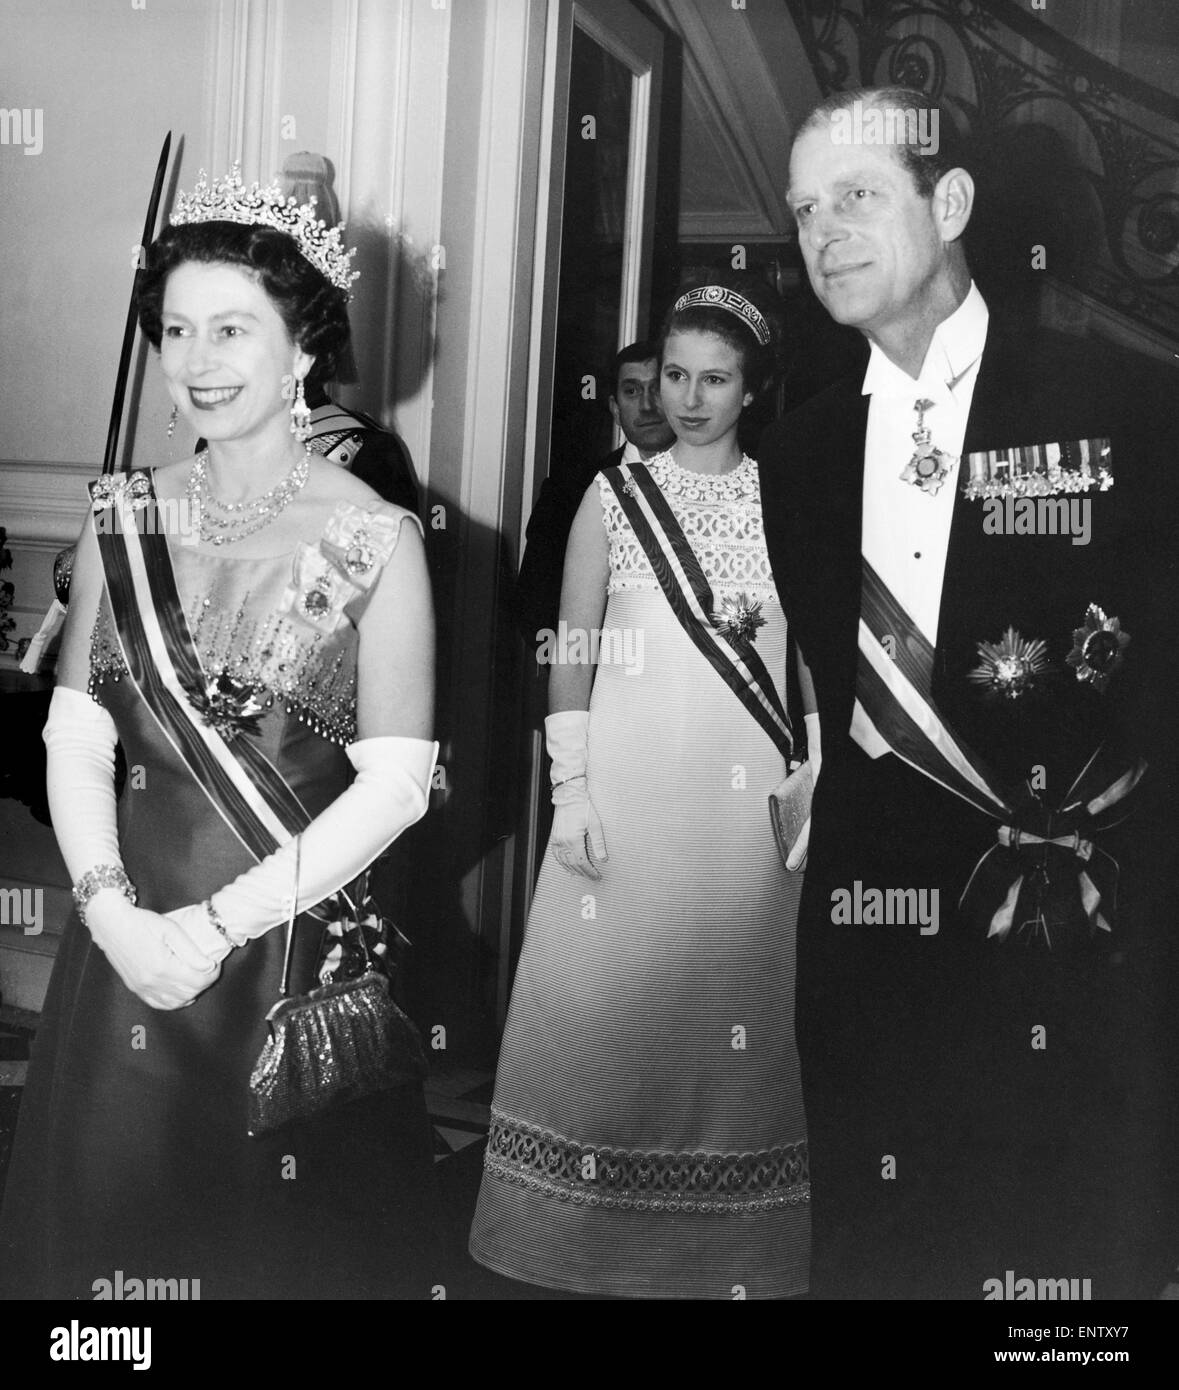 Die Königin und der Herzog von Edinburgh und Prinzessin Anne in der britischen Botschaft in Wien trägt die Order of Merit für Verdienste um die Republik Österreich. Mai 1969. Stockfoto